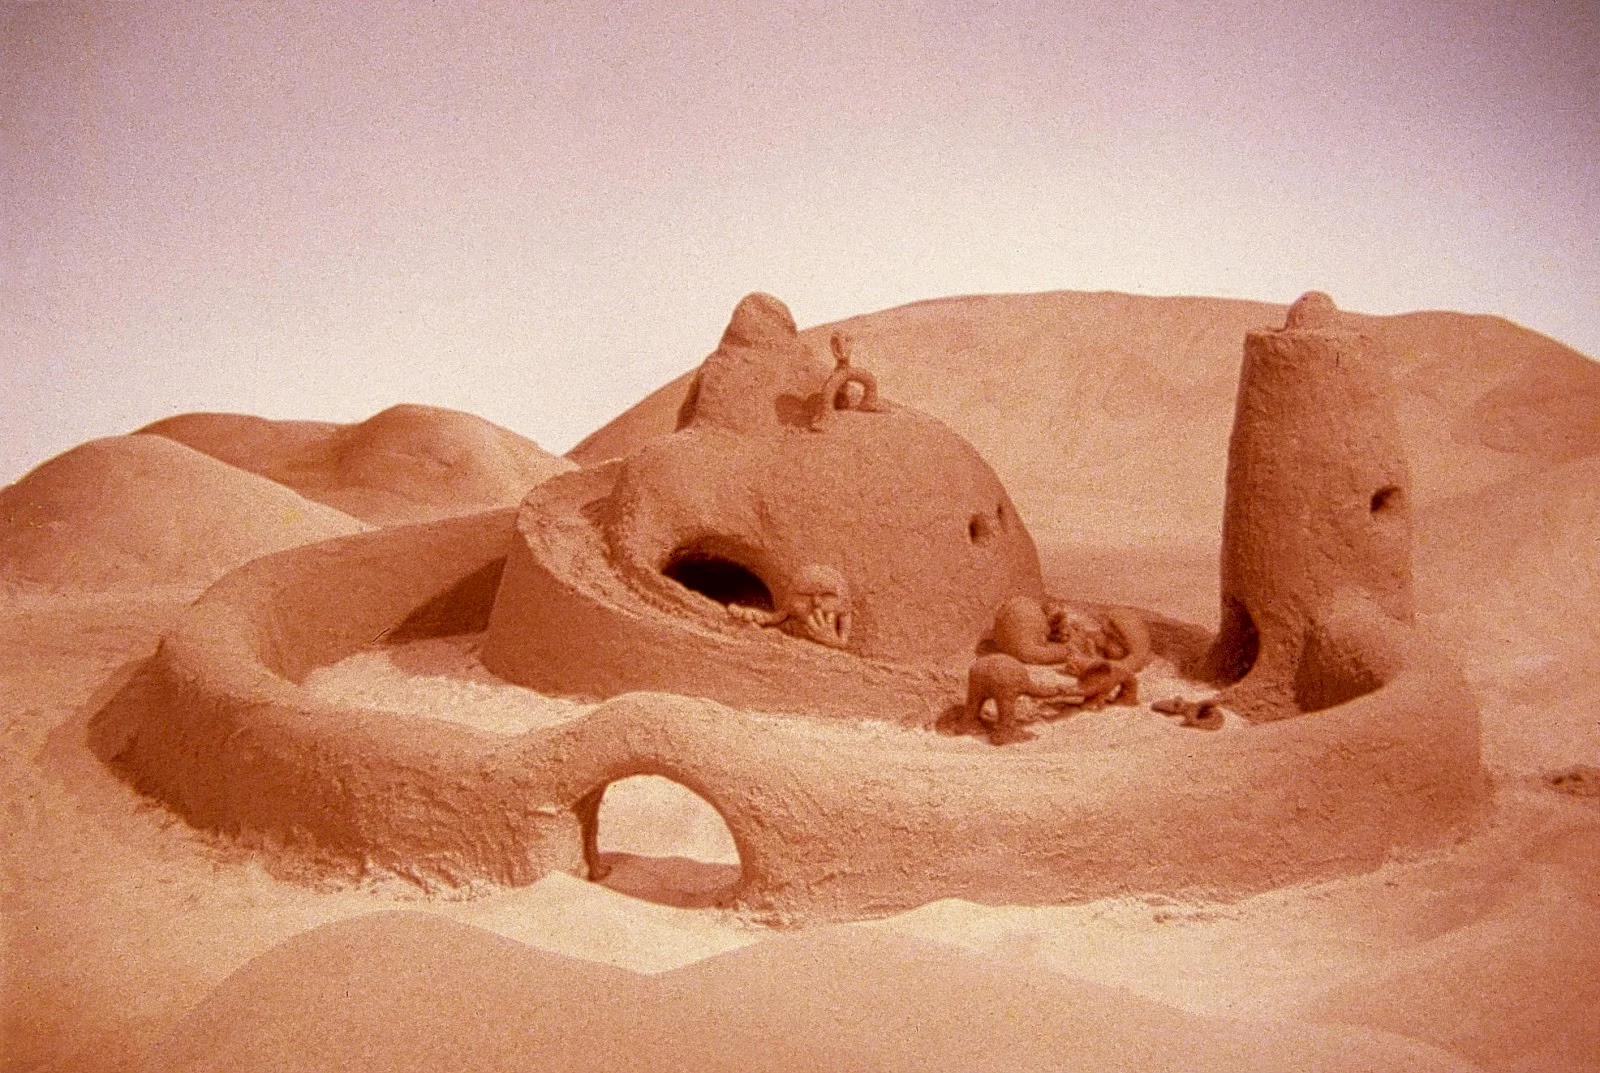 Photo du film : Le Château de sable